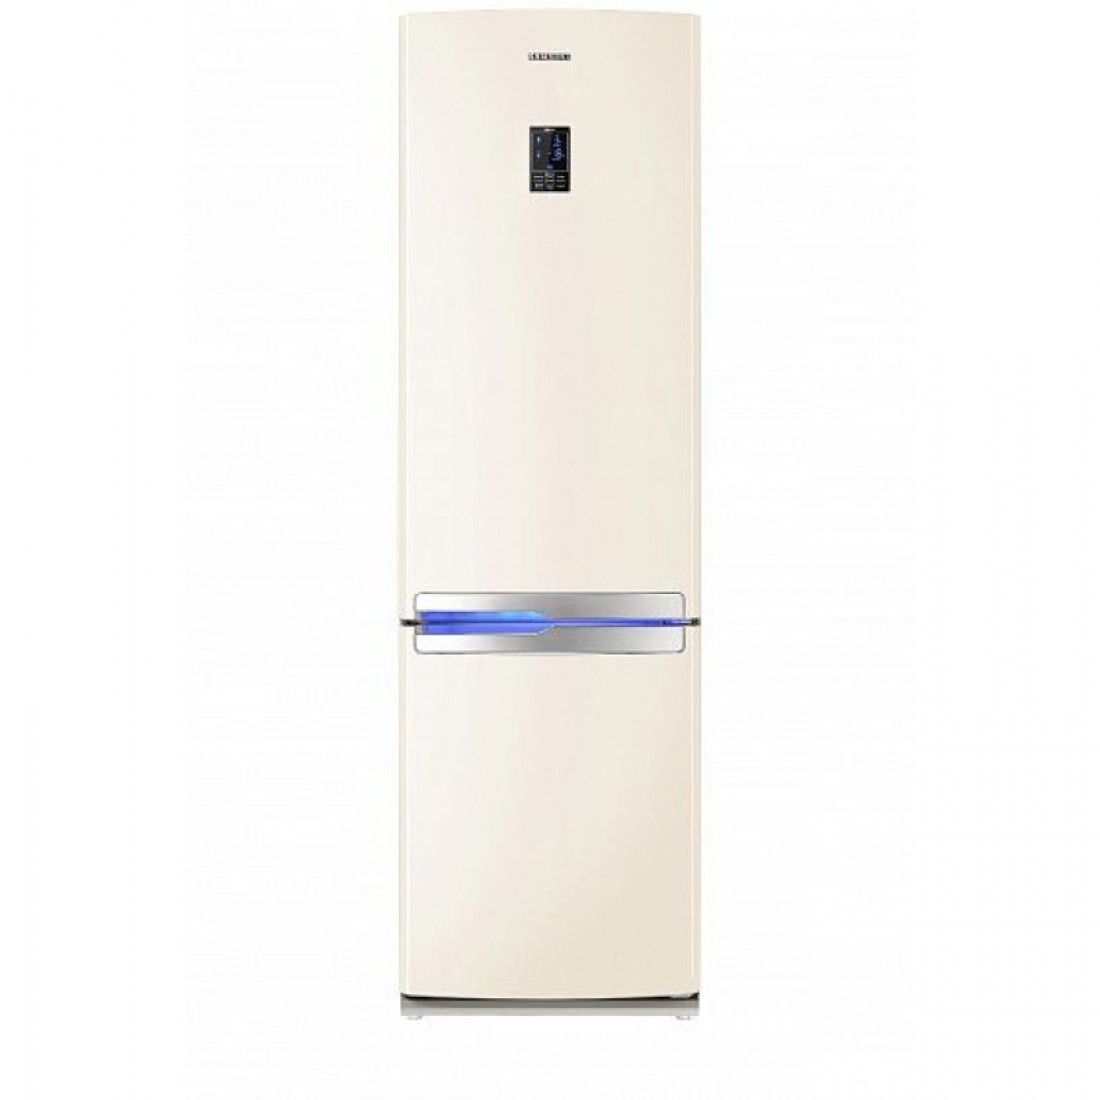 Холодильник двухкамерный купить в москве цена. Холодильник Samsung RL-55 VEBVB. Samsung RL-52 TEBVB. Samsung RL-55 TEBVB. Холодильник Samsung RL-55 TEBVB.